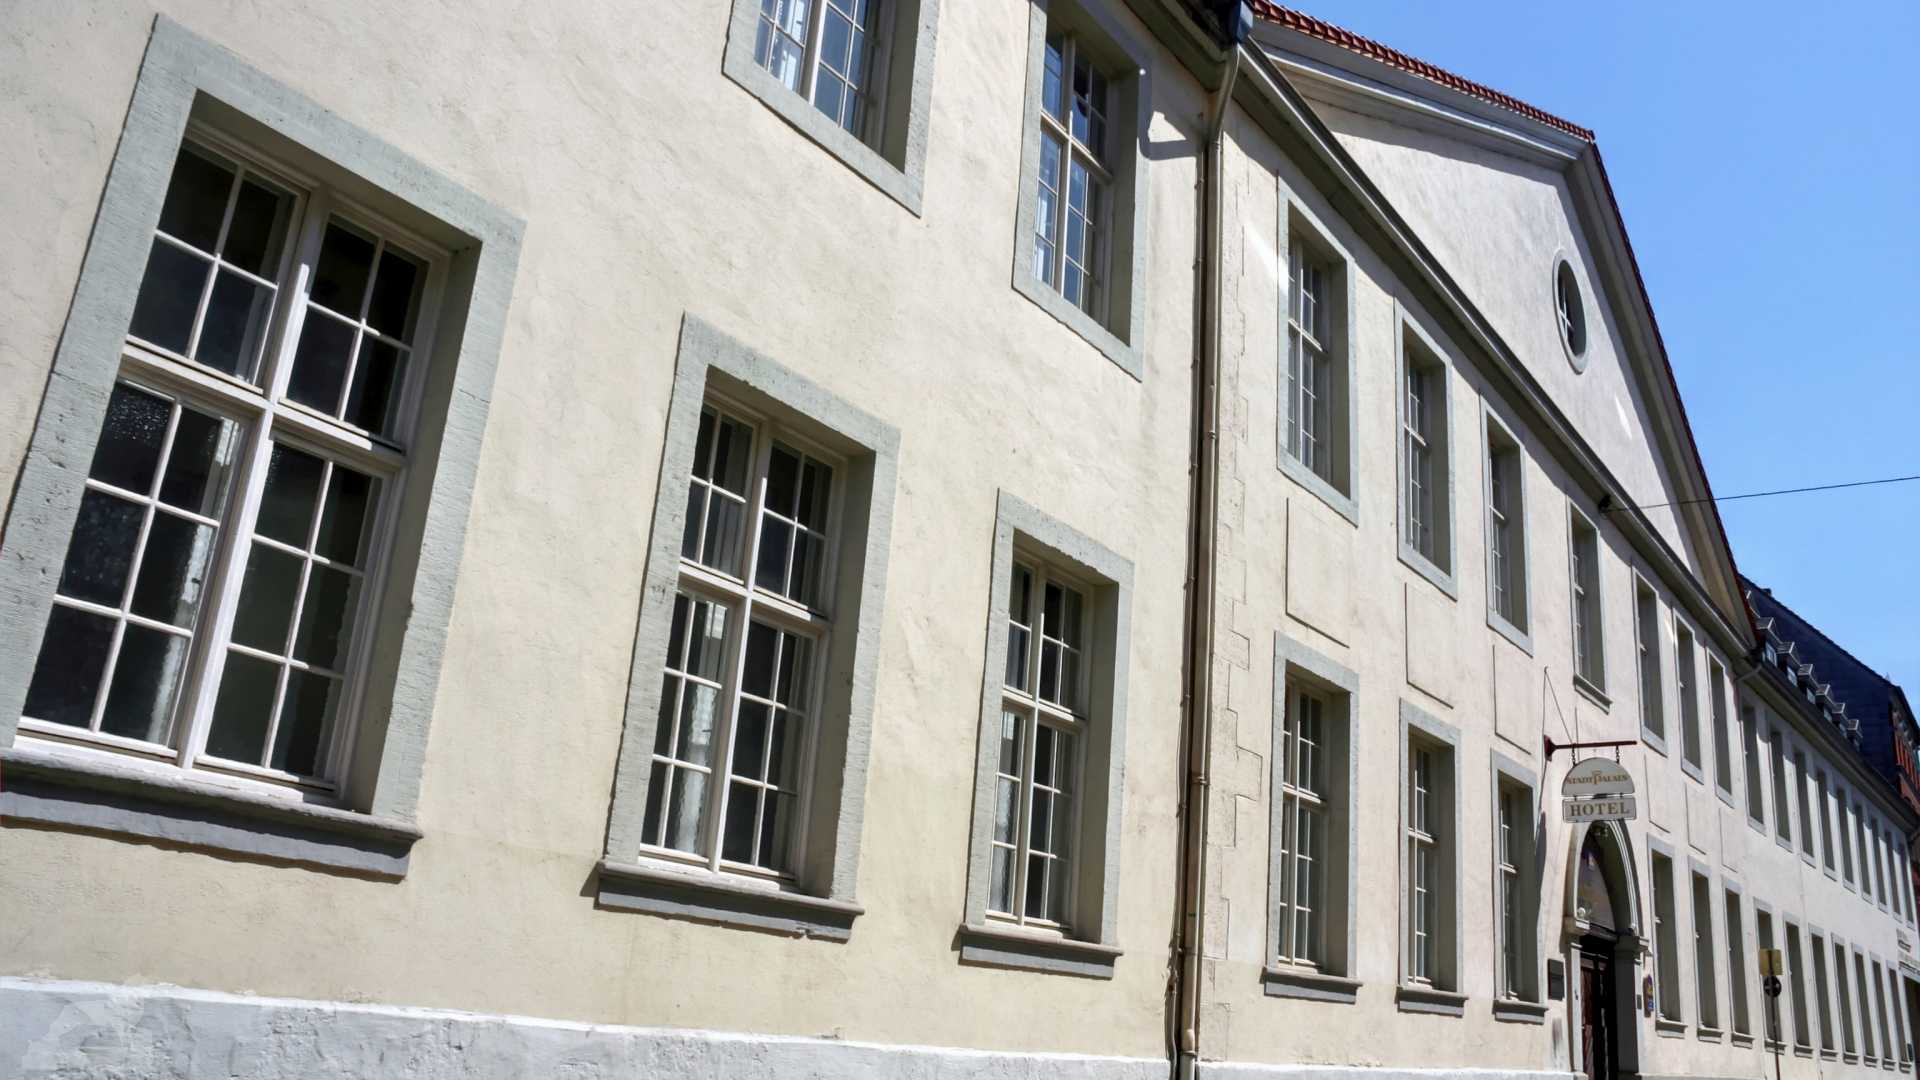 Waisenhaus